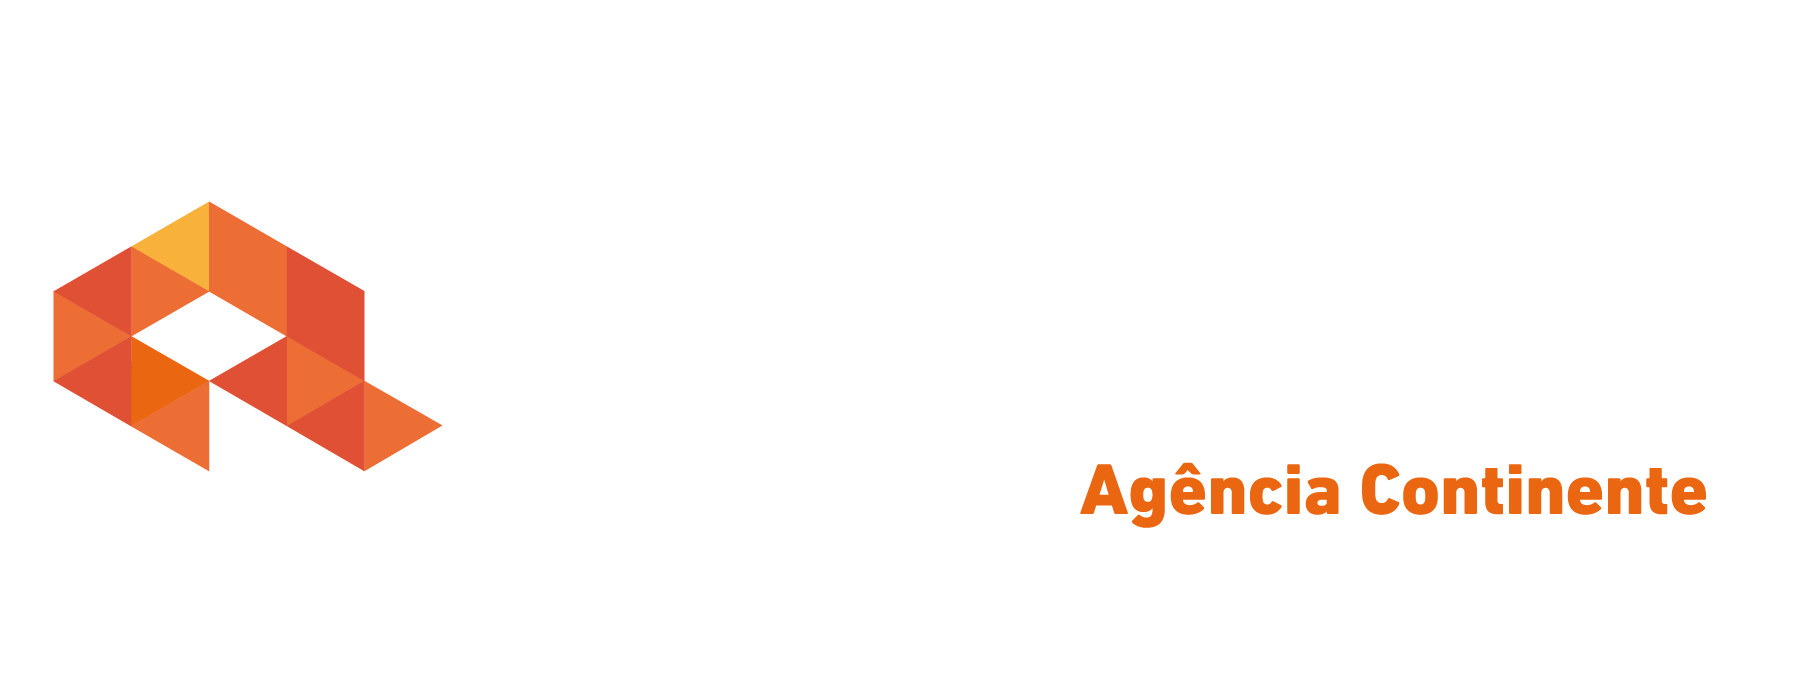 Logo crédito real Crédito Real Continente